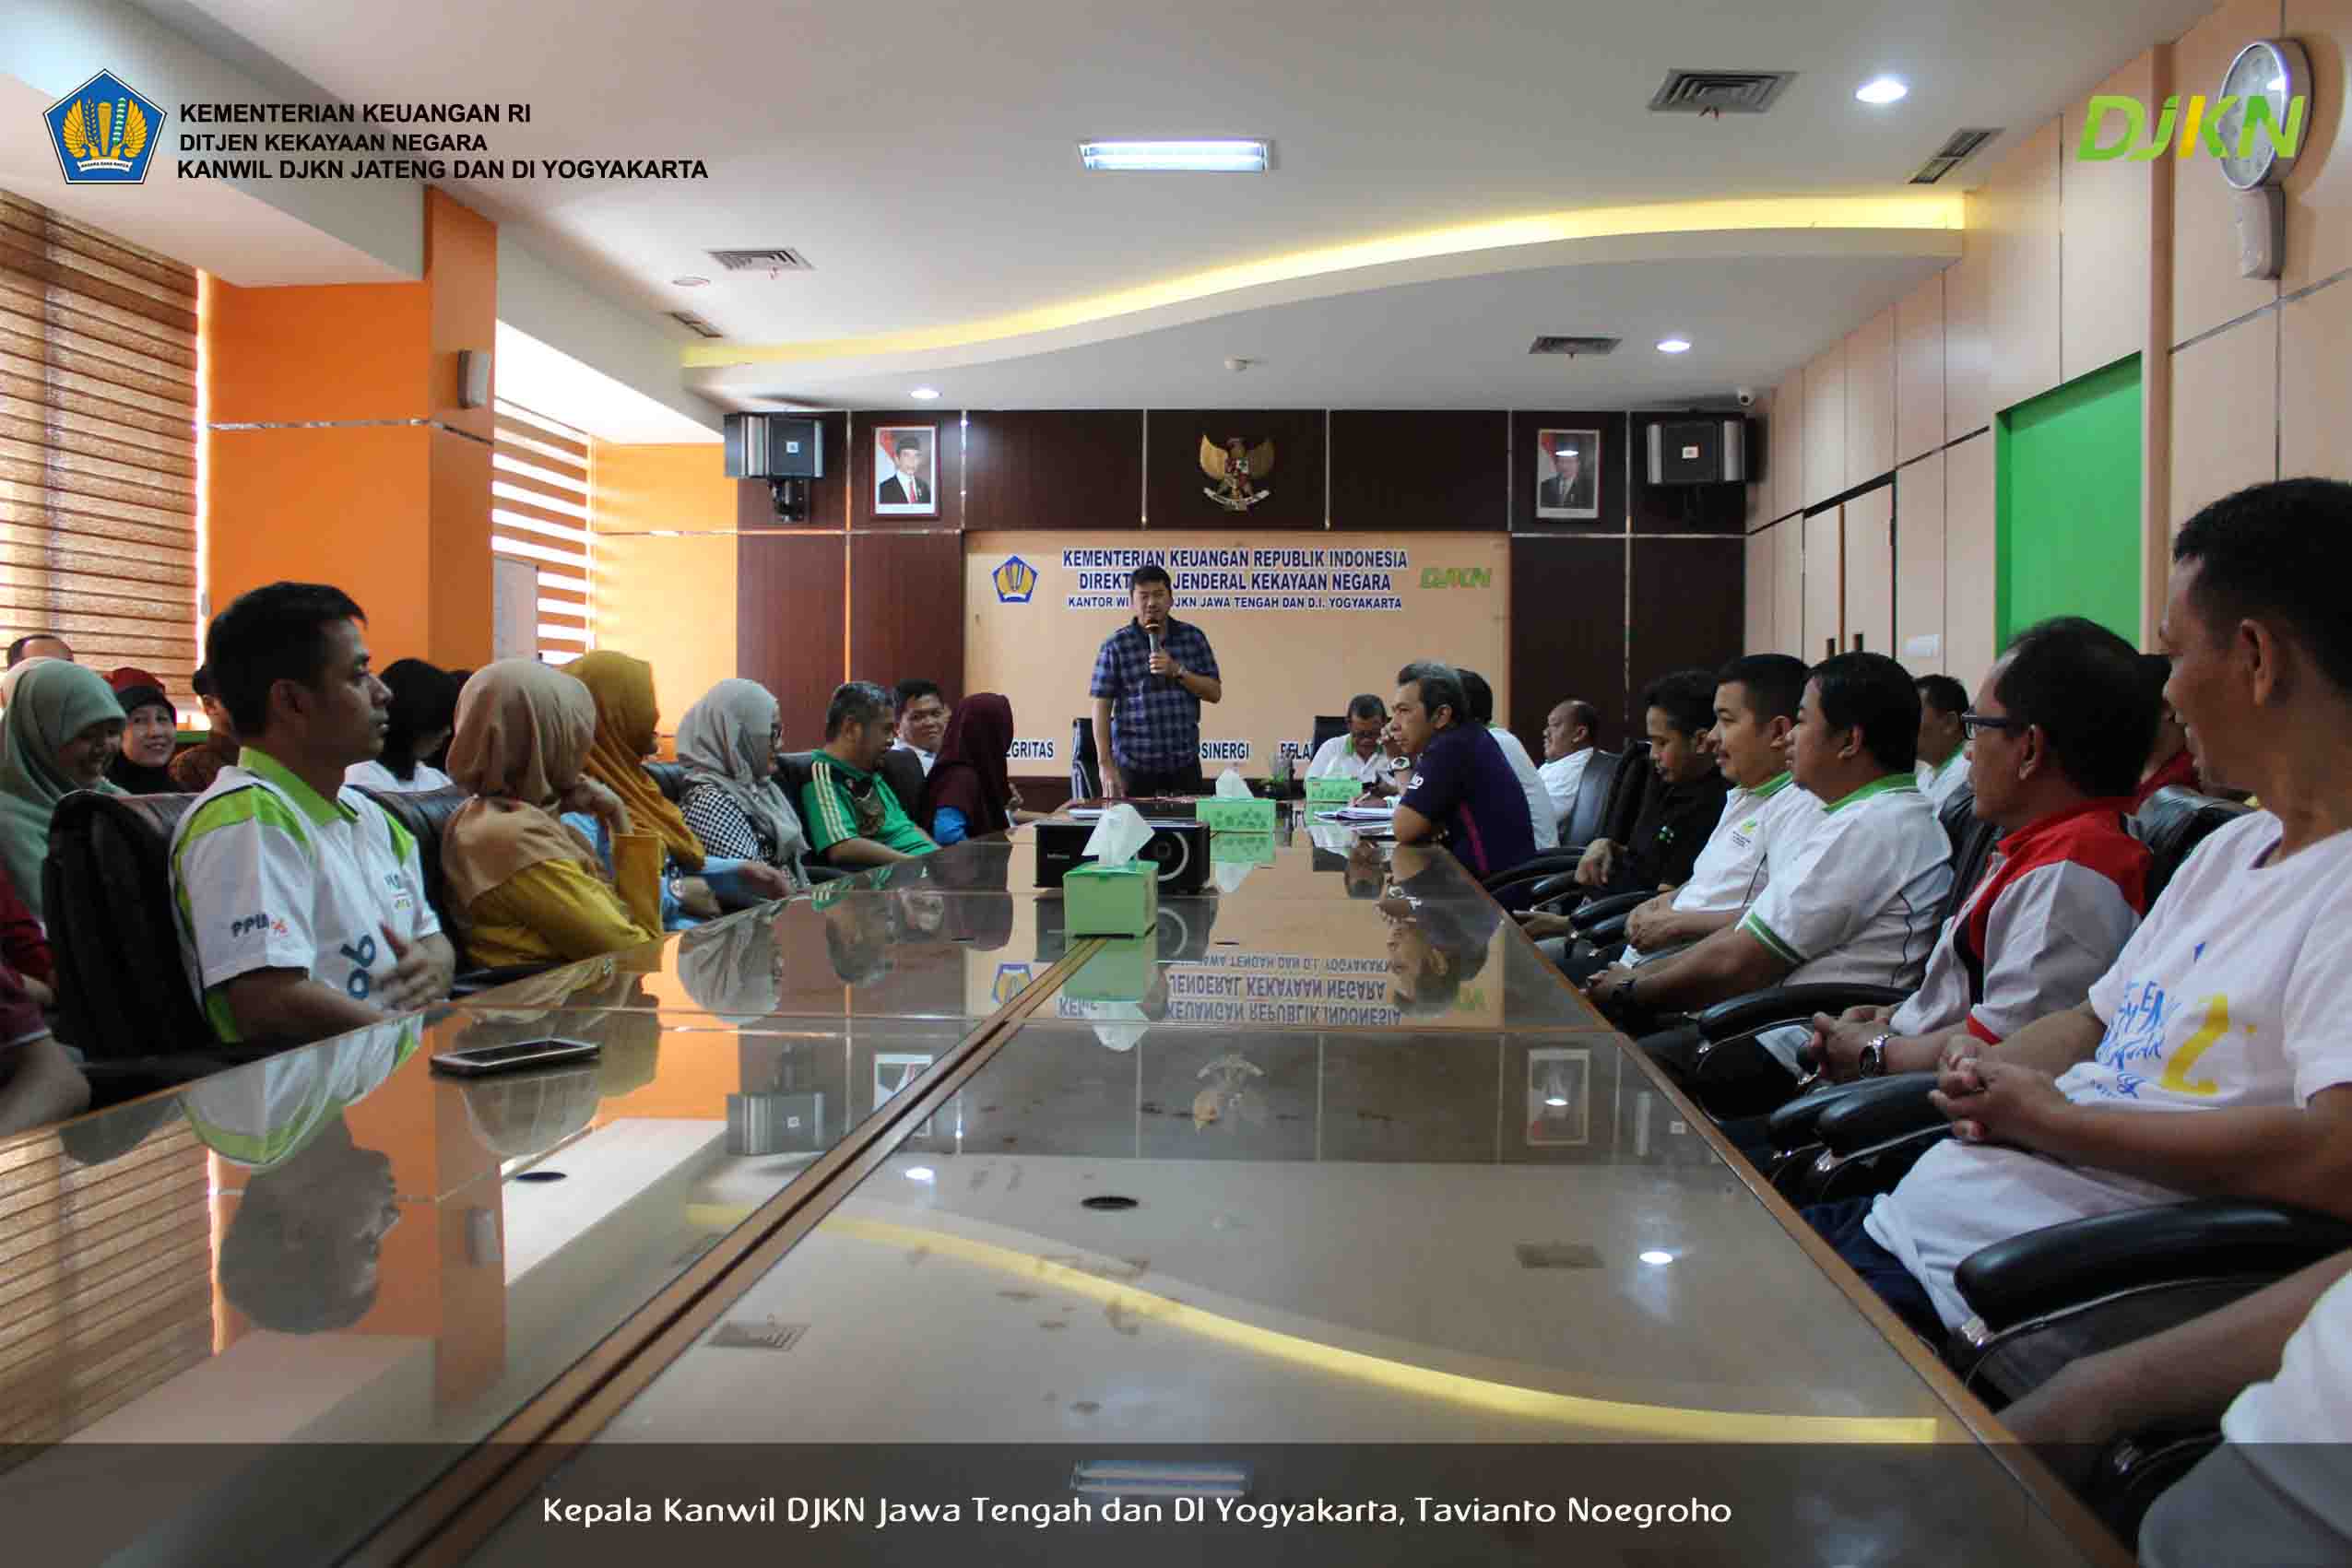 Semarang Mengawali Tahun 2018 Kanwil DJKN Jawa Tengah dan DI Yogyakarta gelar pengarahan perdana pada Jumat 5 1 2018 bertempat di Ruang Rapat Kanwil